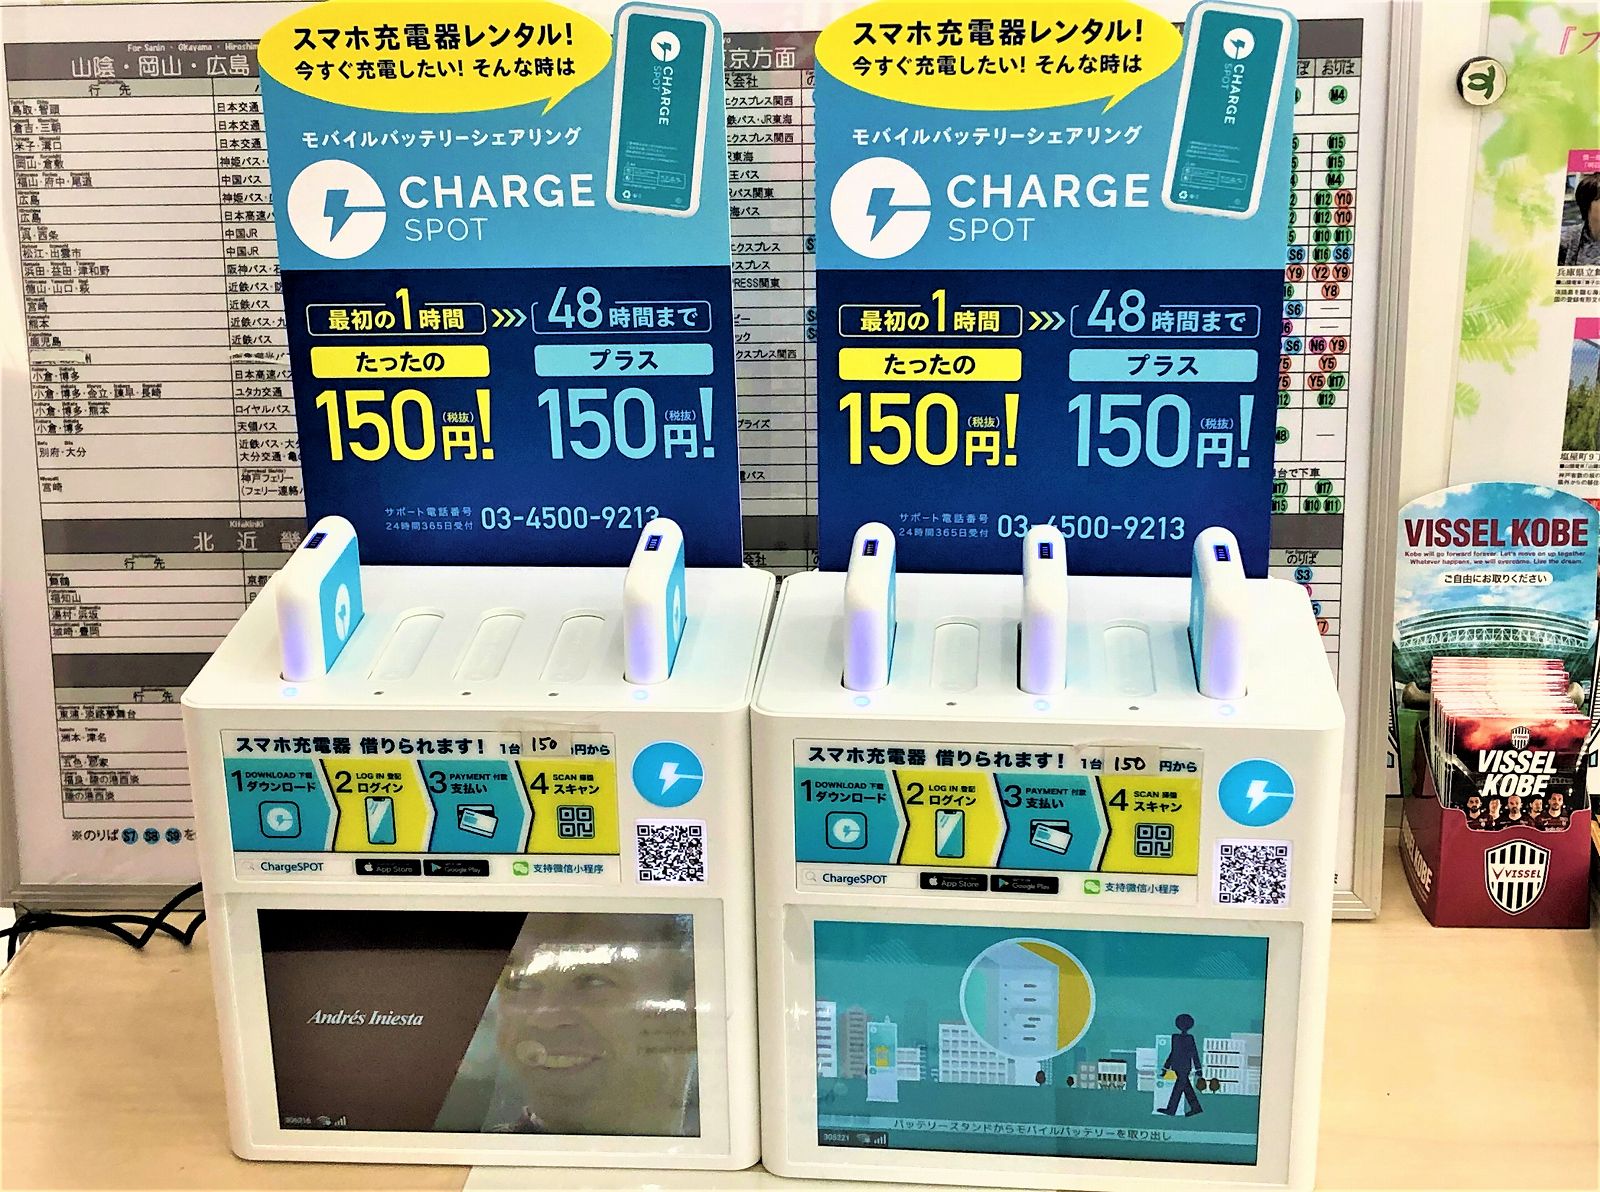 スマホを充電したい モバイルバッテリーシェアリング Charge Spot があるって知っとう Chargespot スマホ充電器レンタル モバイルバッテリーシェアリング 神戸市 神戸観光 東灘ジャーナル